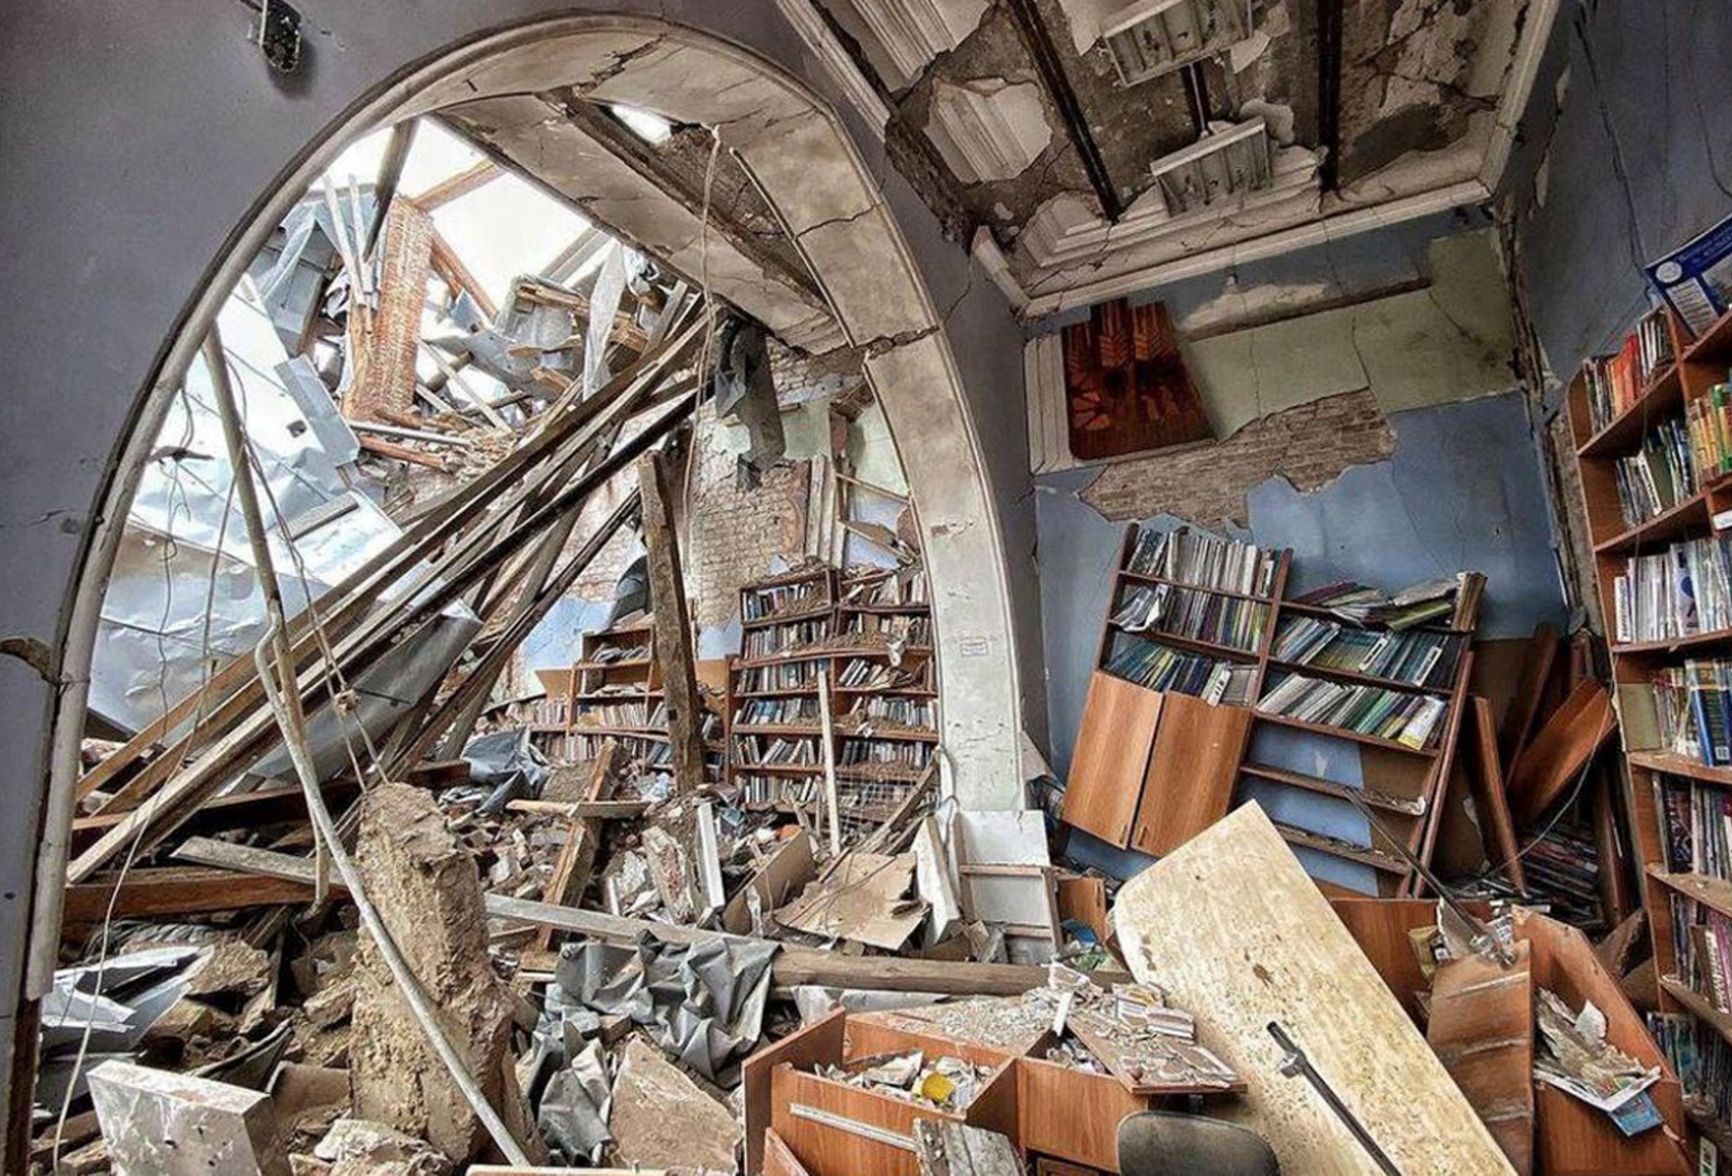 Ruined bookshelves